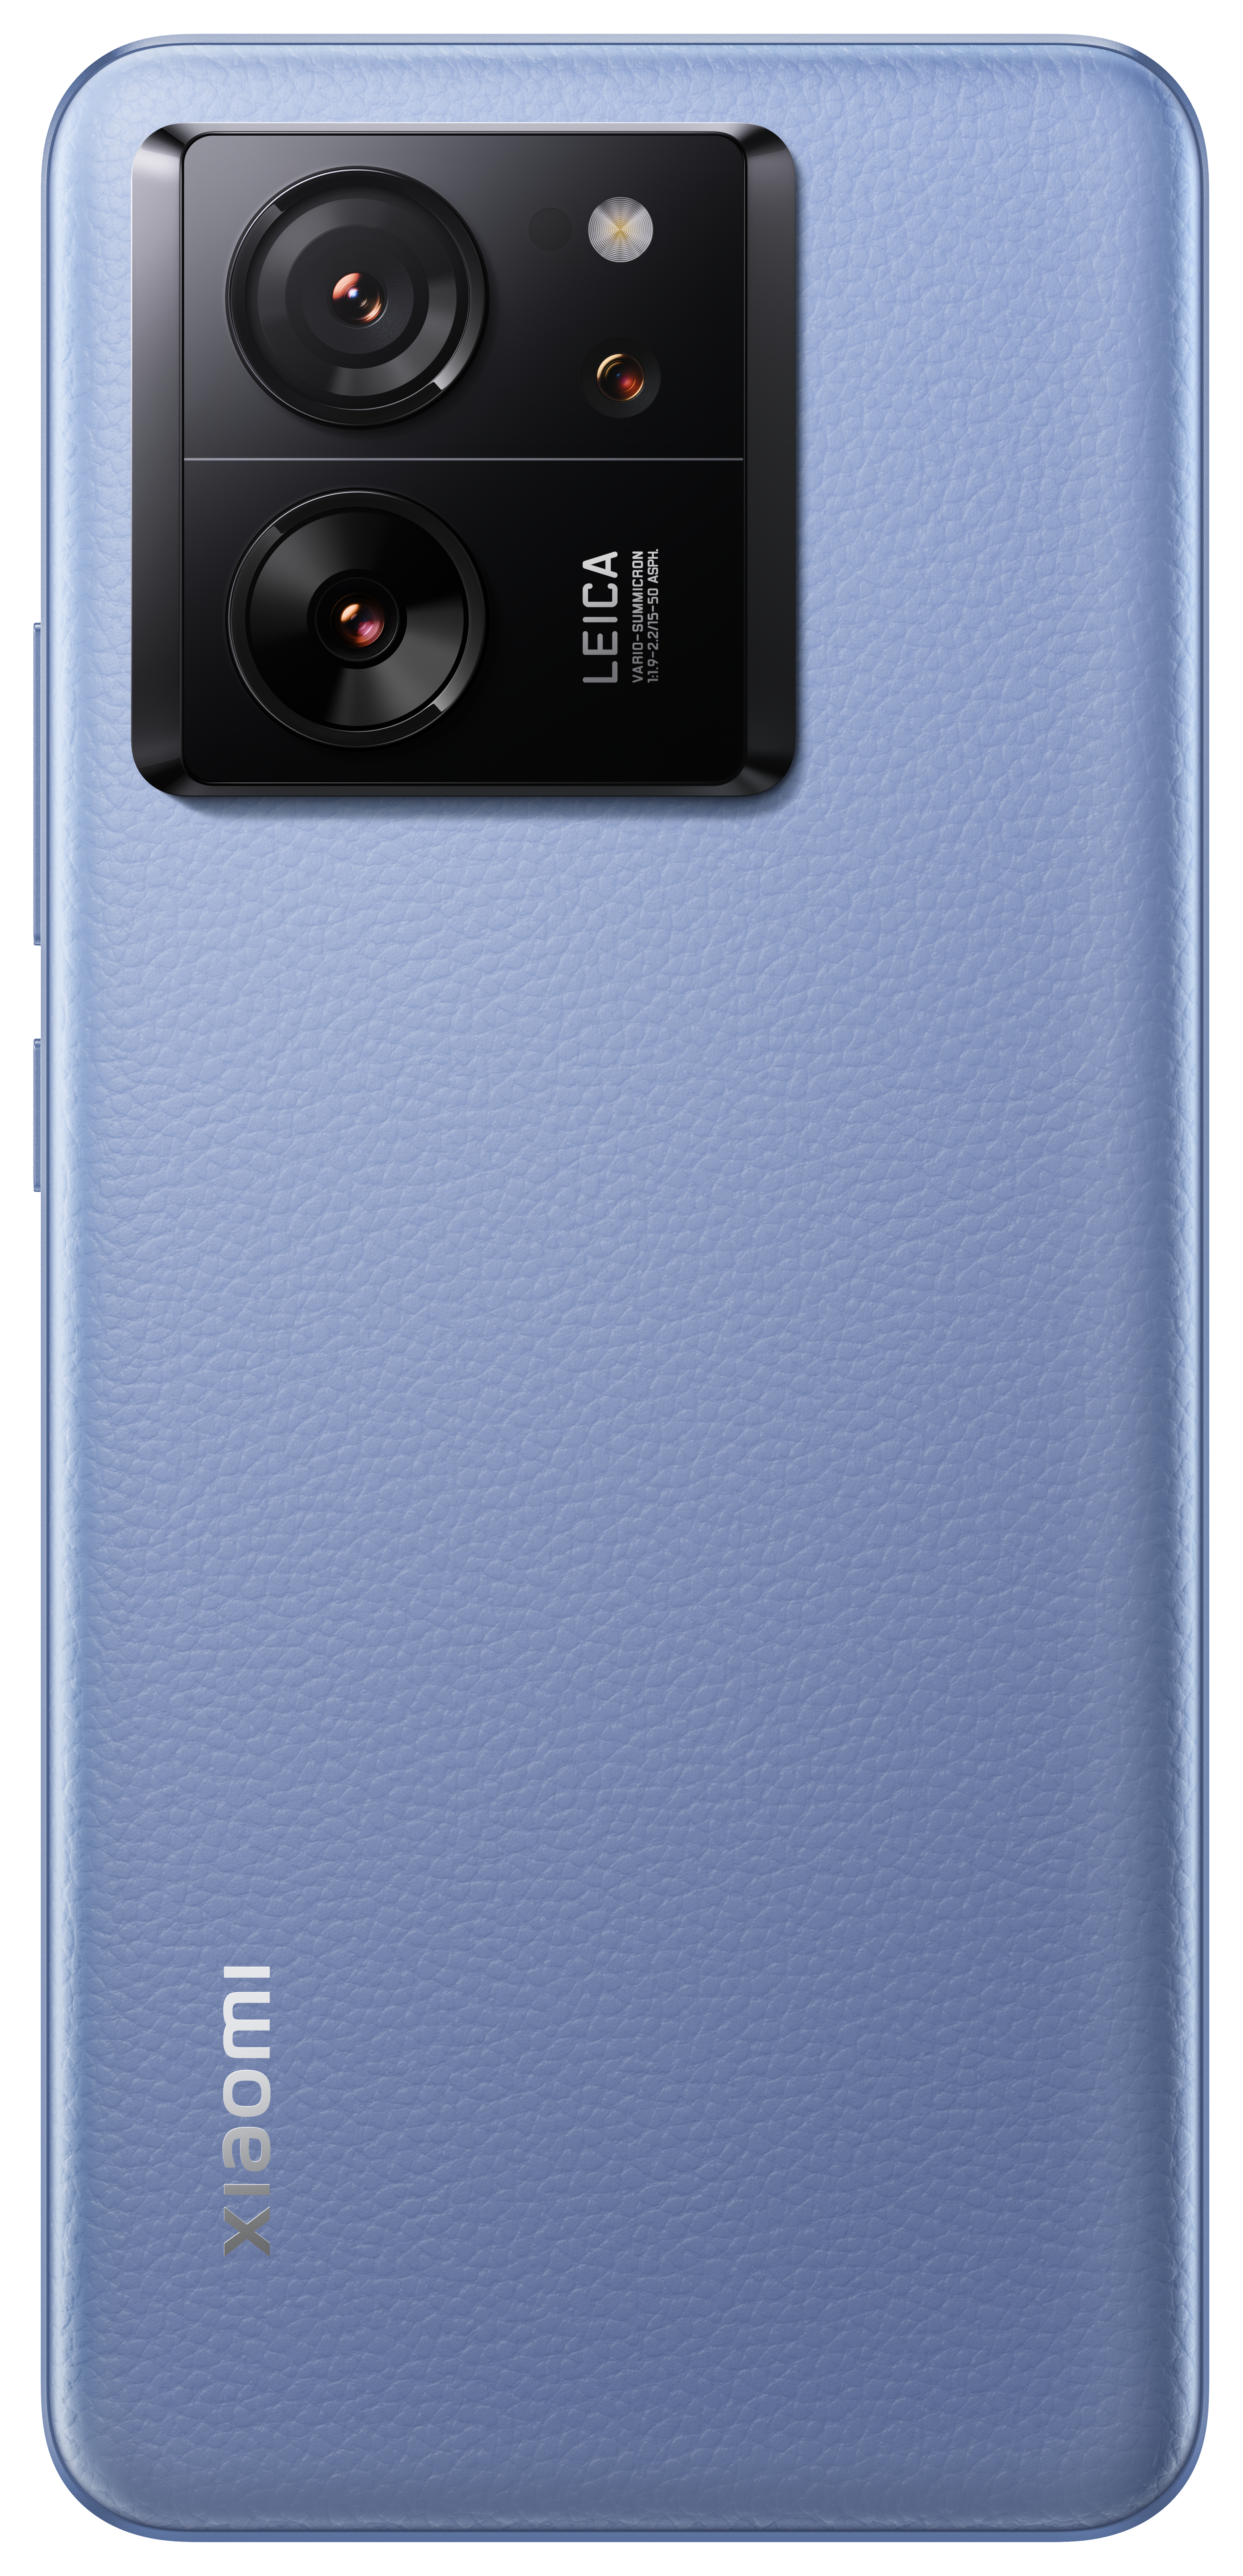 XIAOMI SIM Pro Alpine Blue GB 512 13T Dual